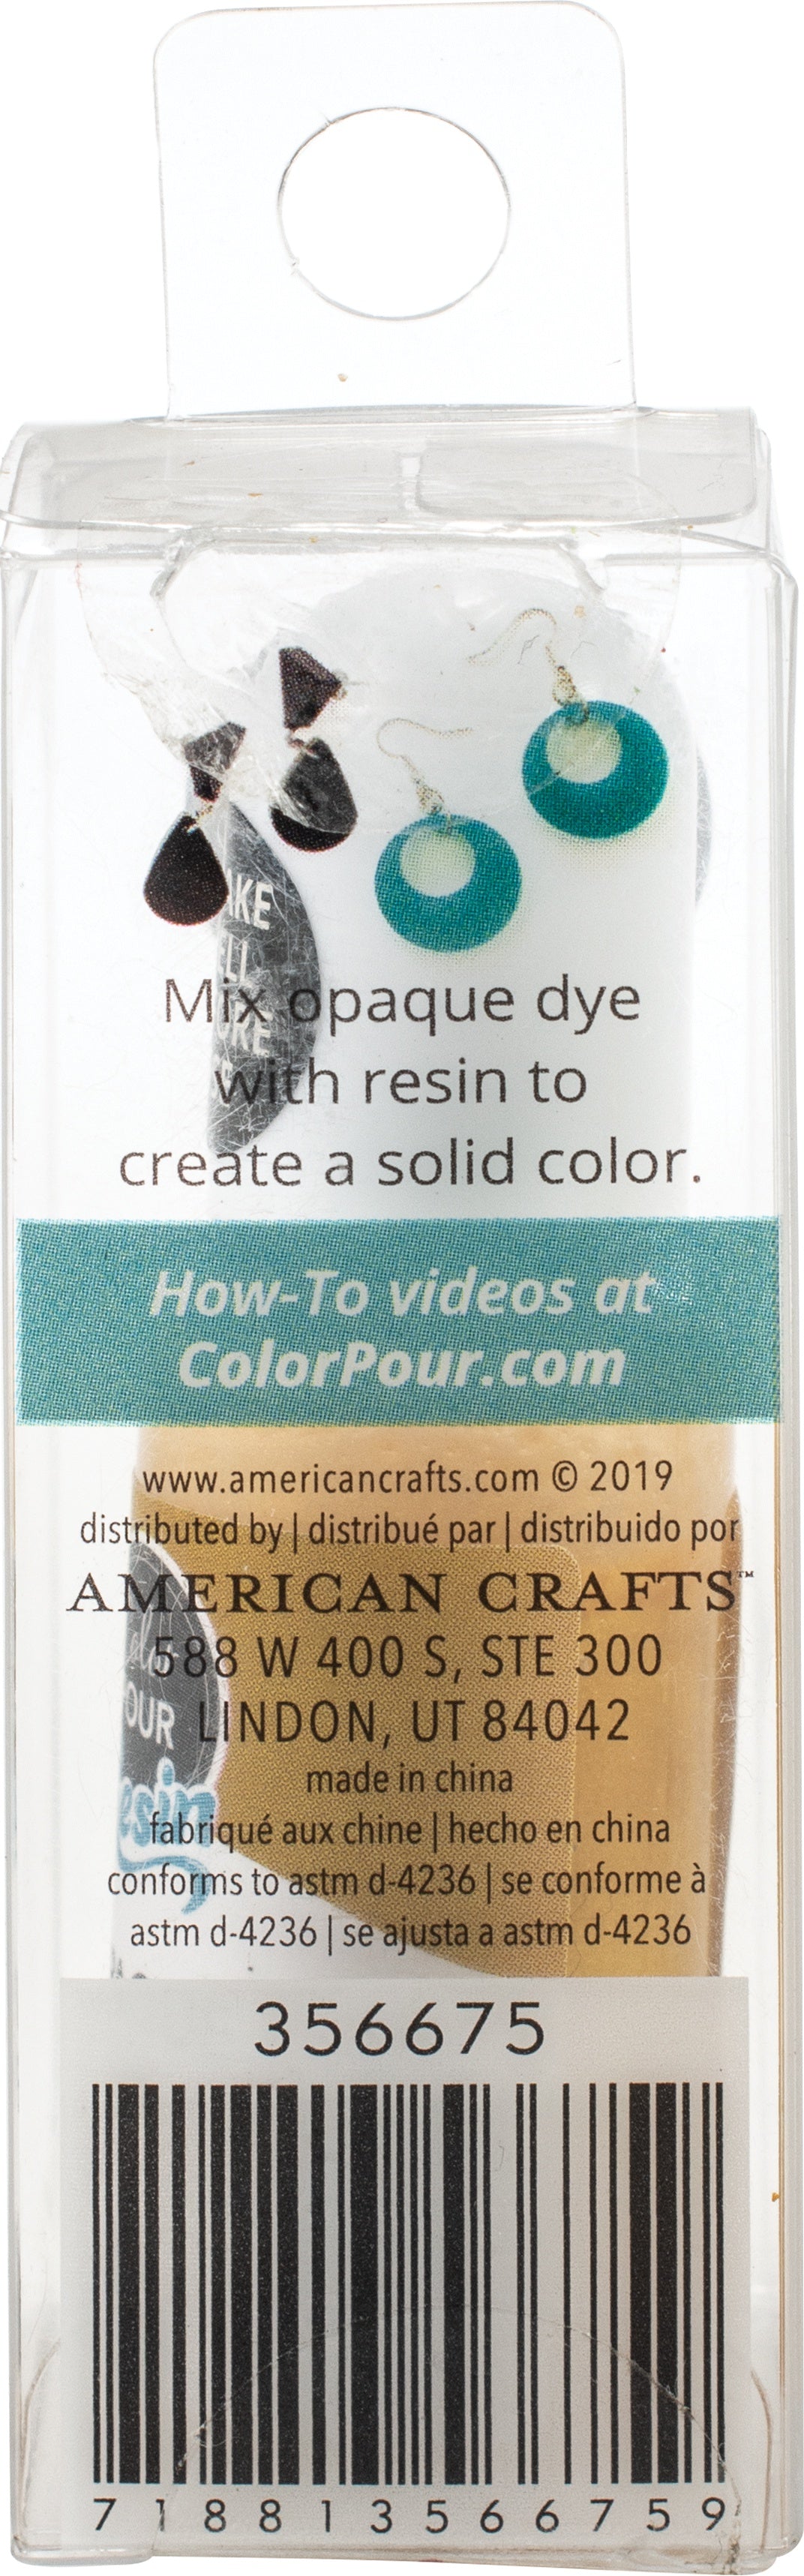 American Crafts™ Color Pour Magic 2 Piece Opaque Gold Paint